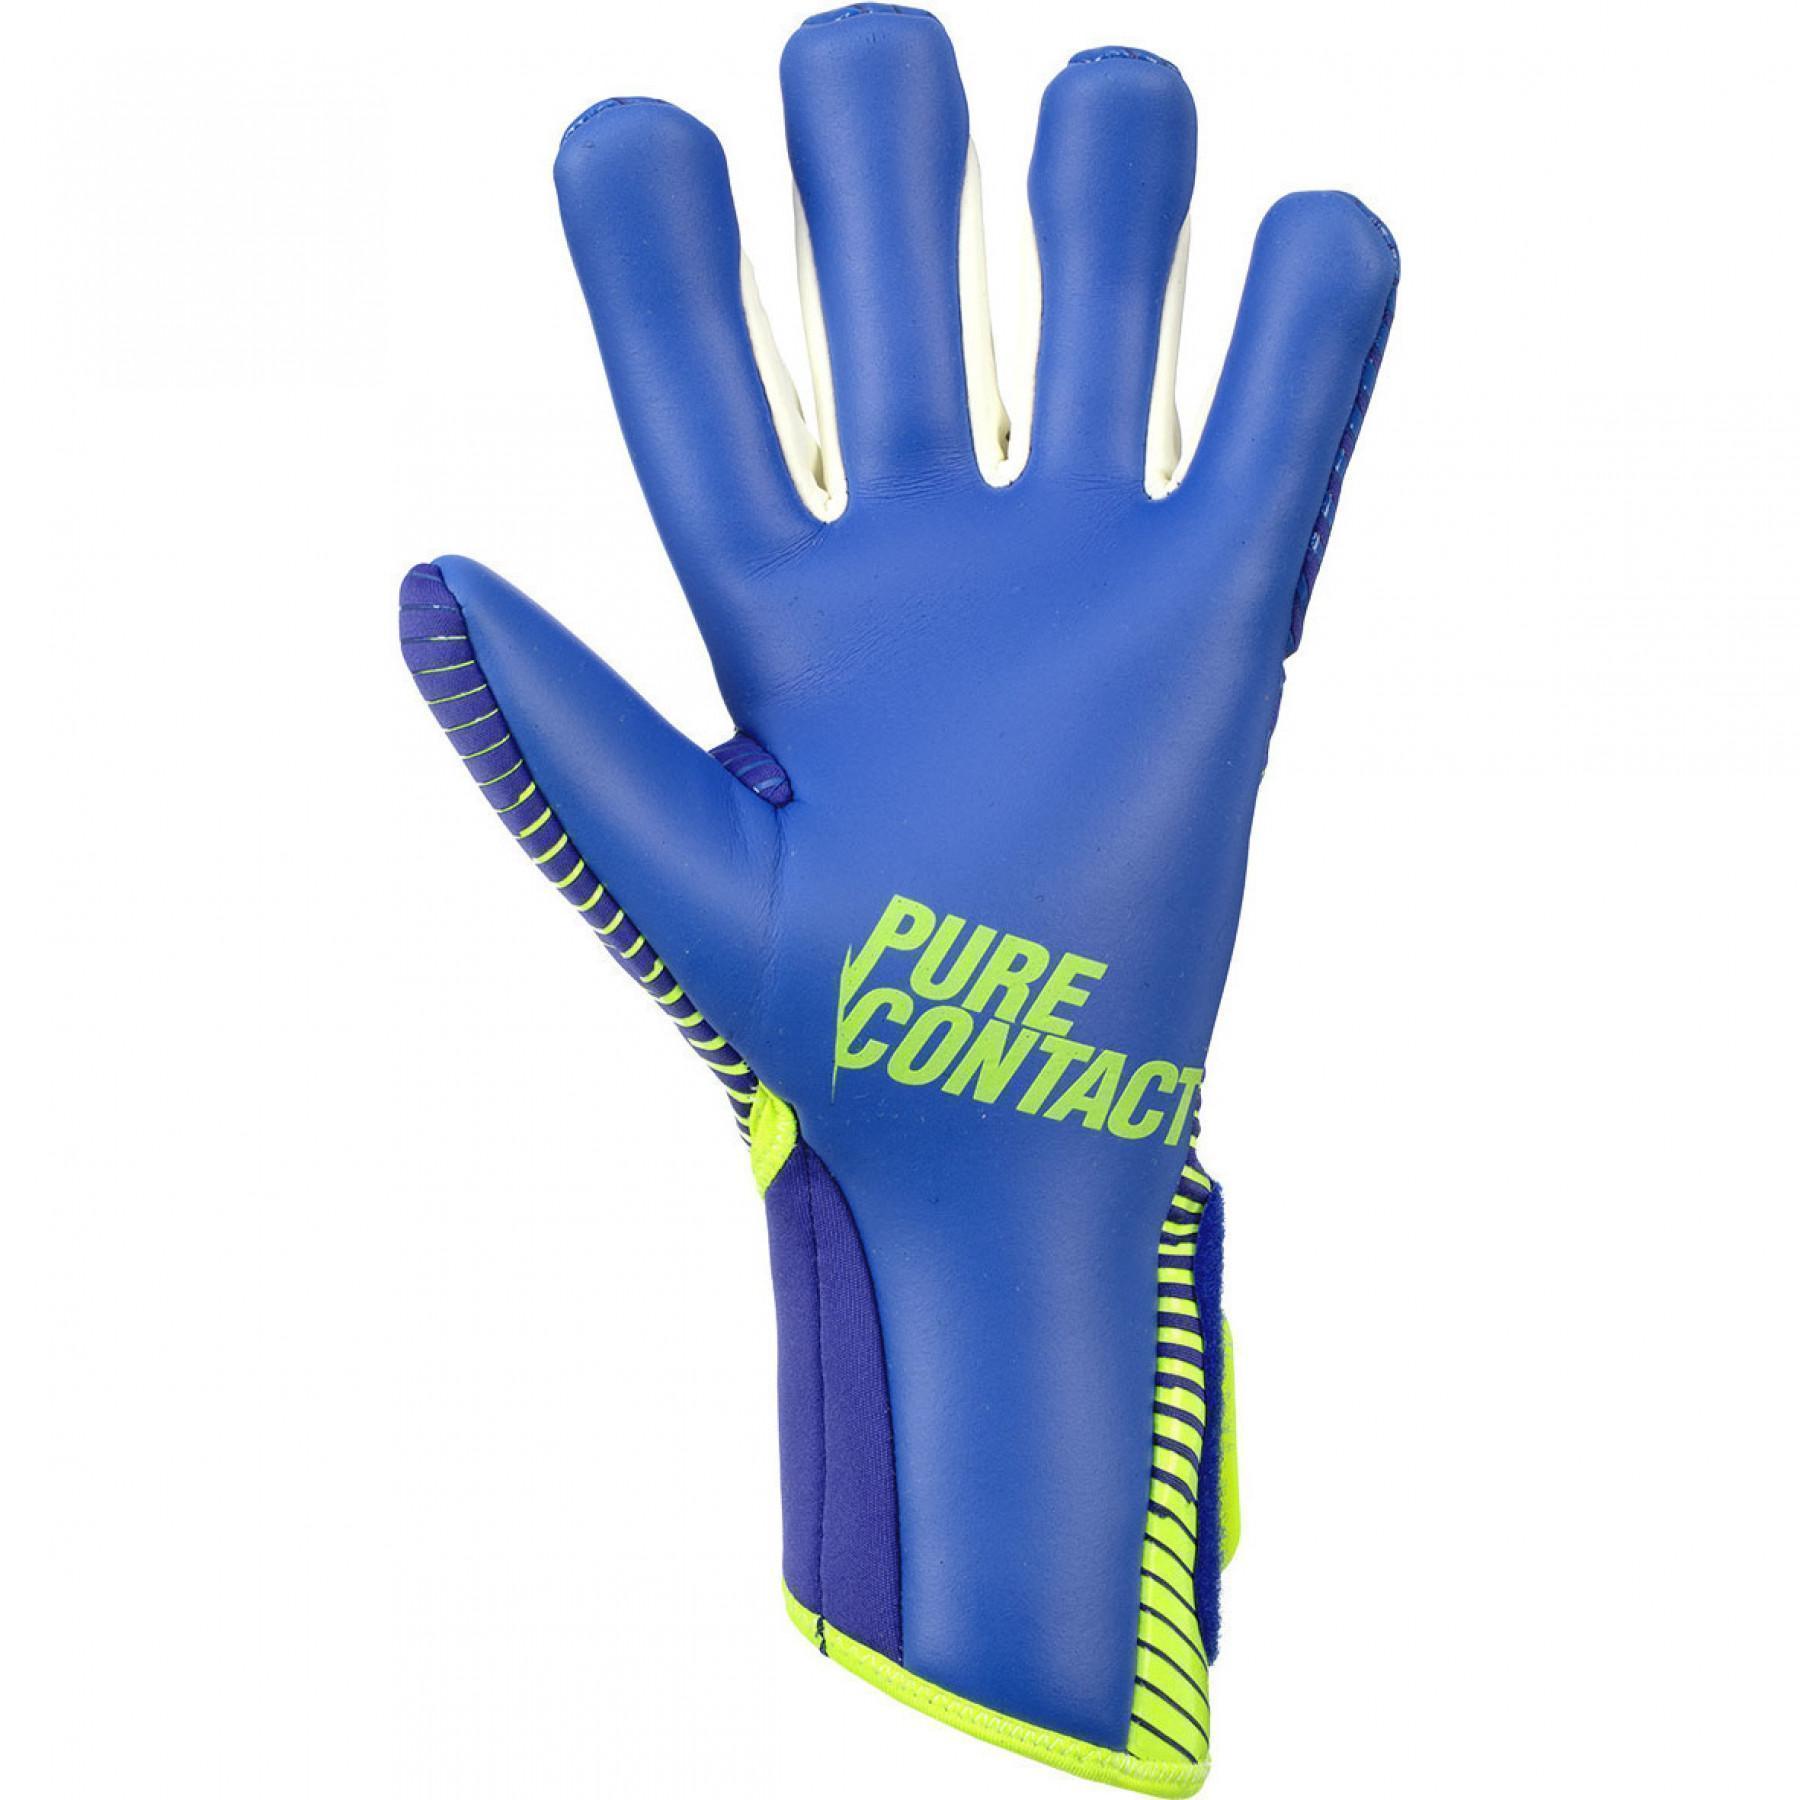 Goalkeeper gloves Reusch Pure Contact 3 G3 Duo